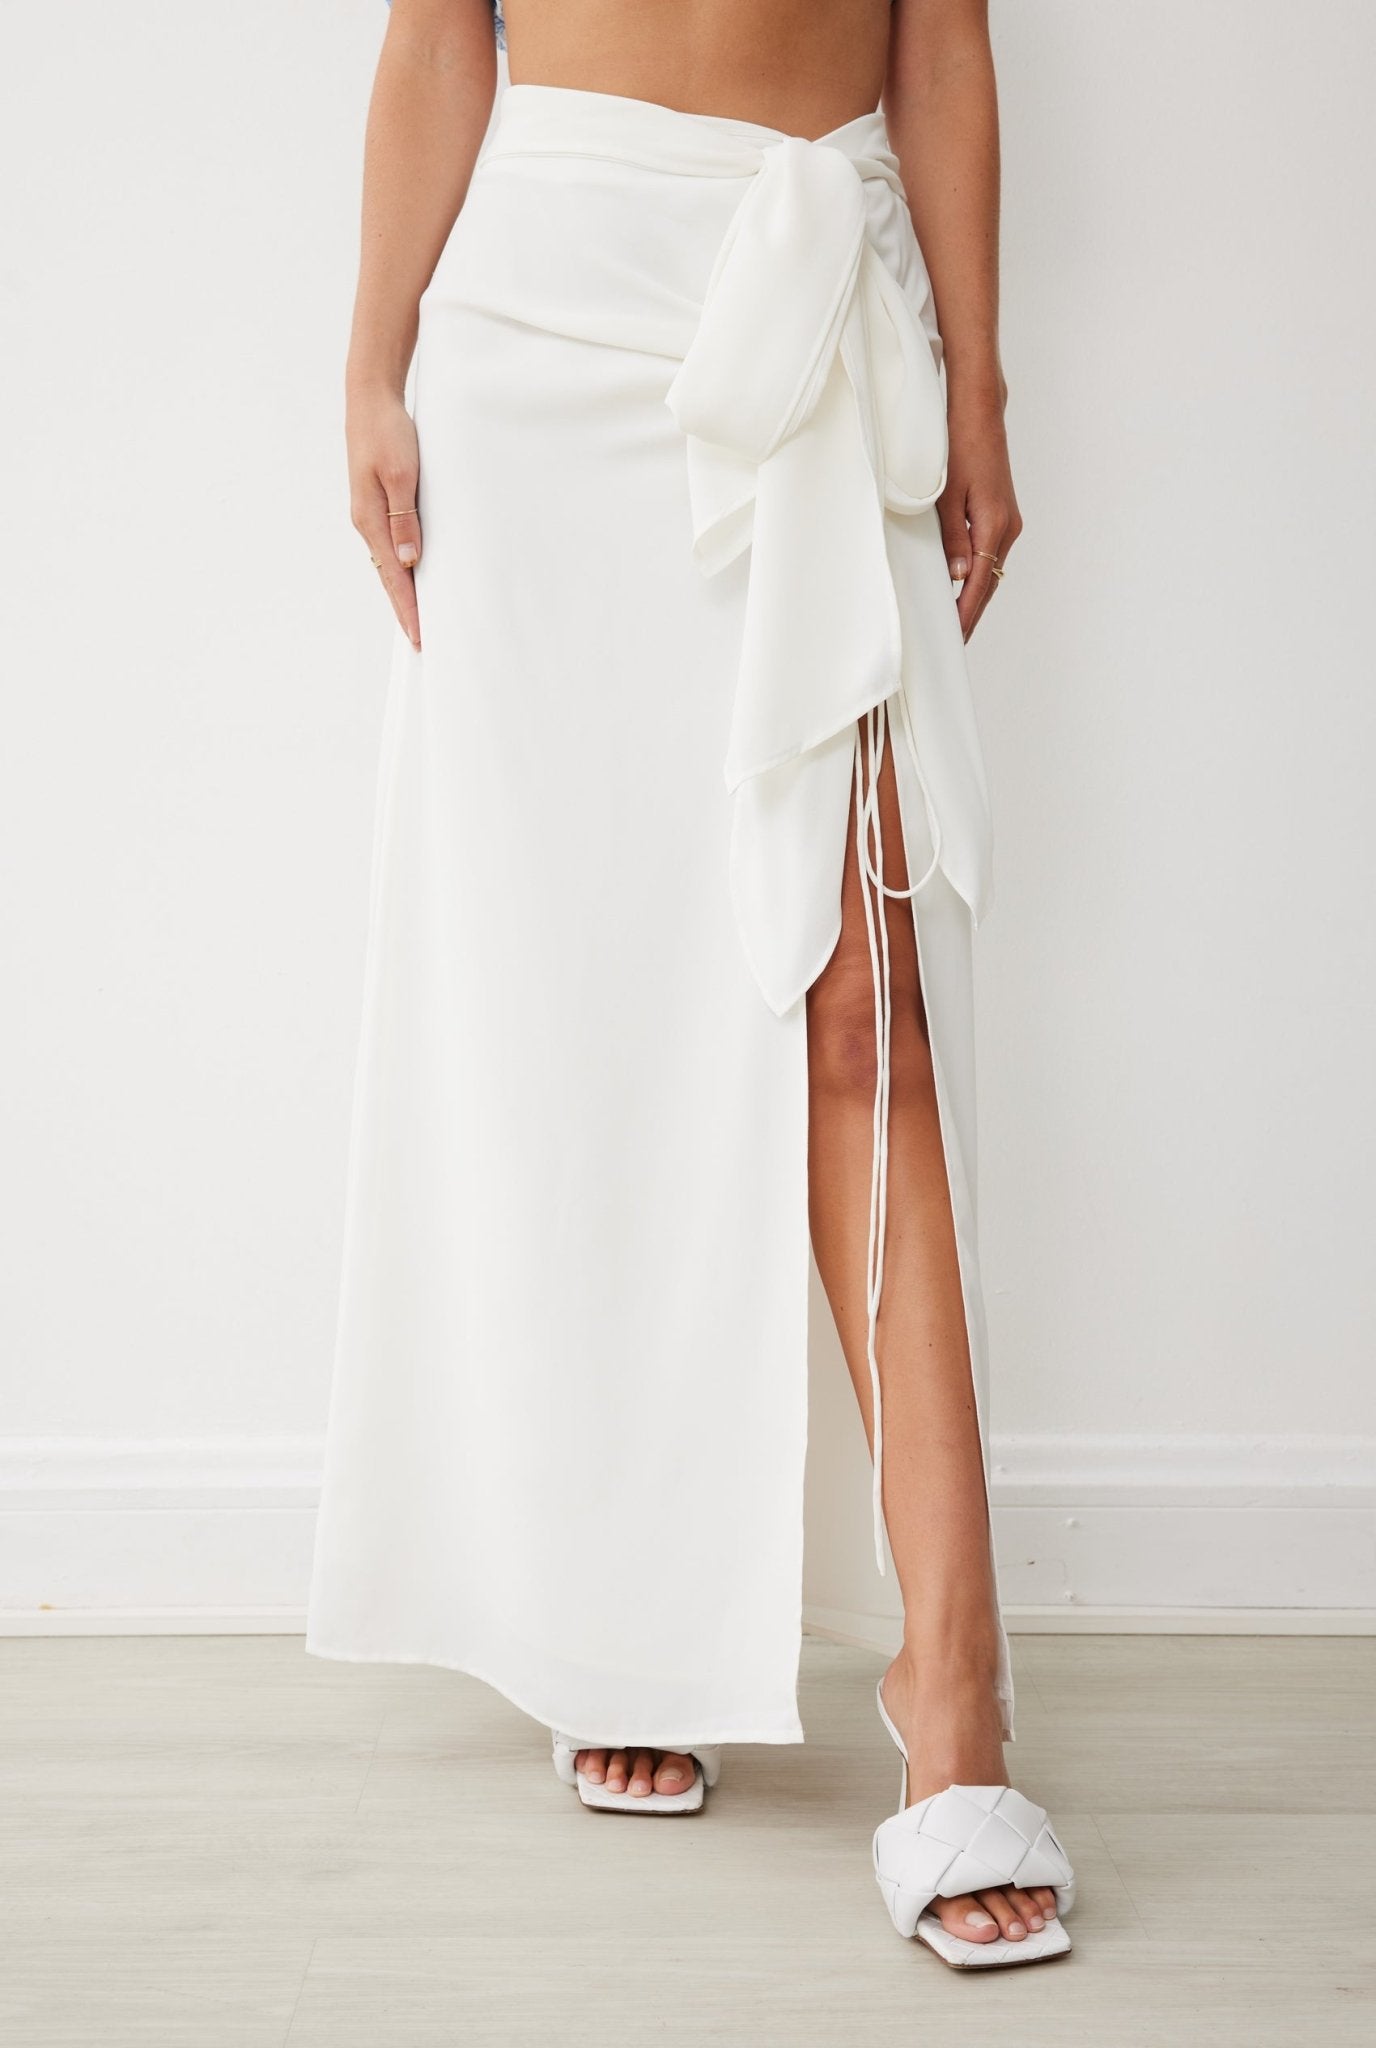 South Skirt in White - BOSKEMPER